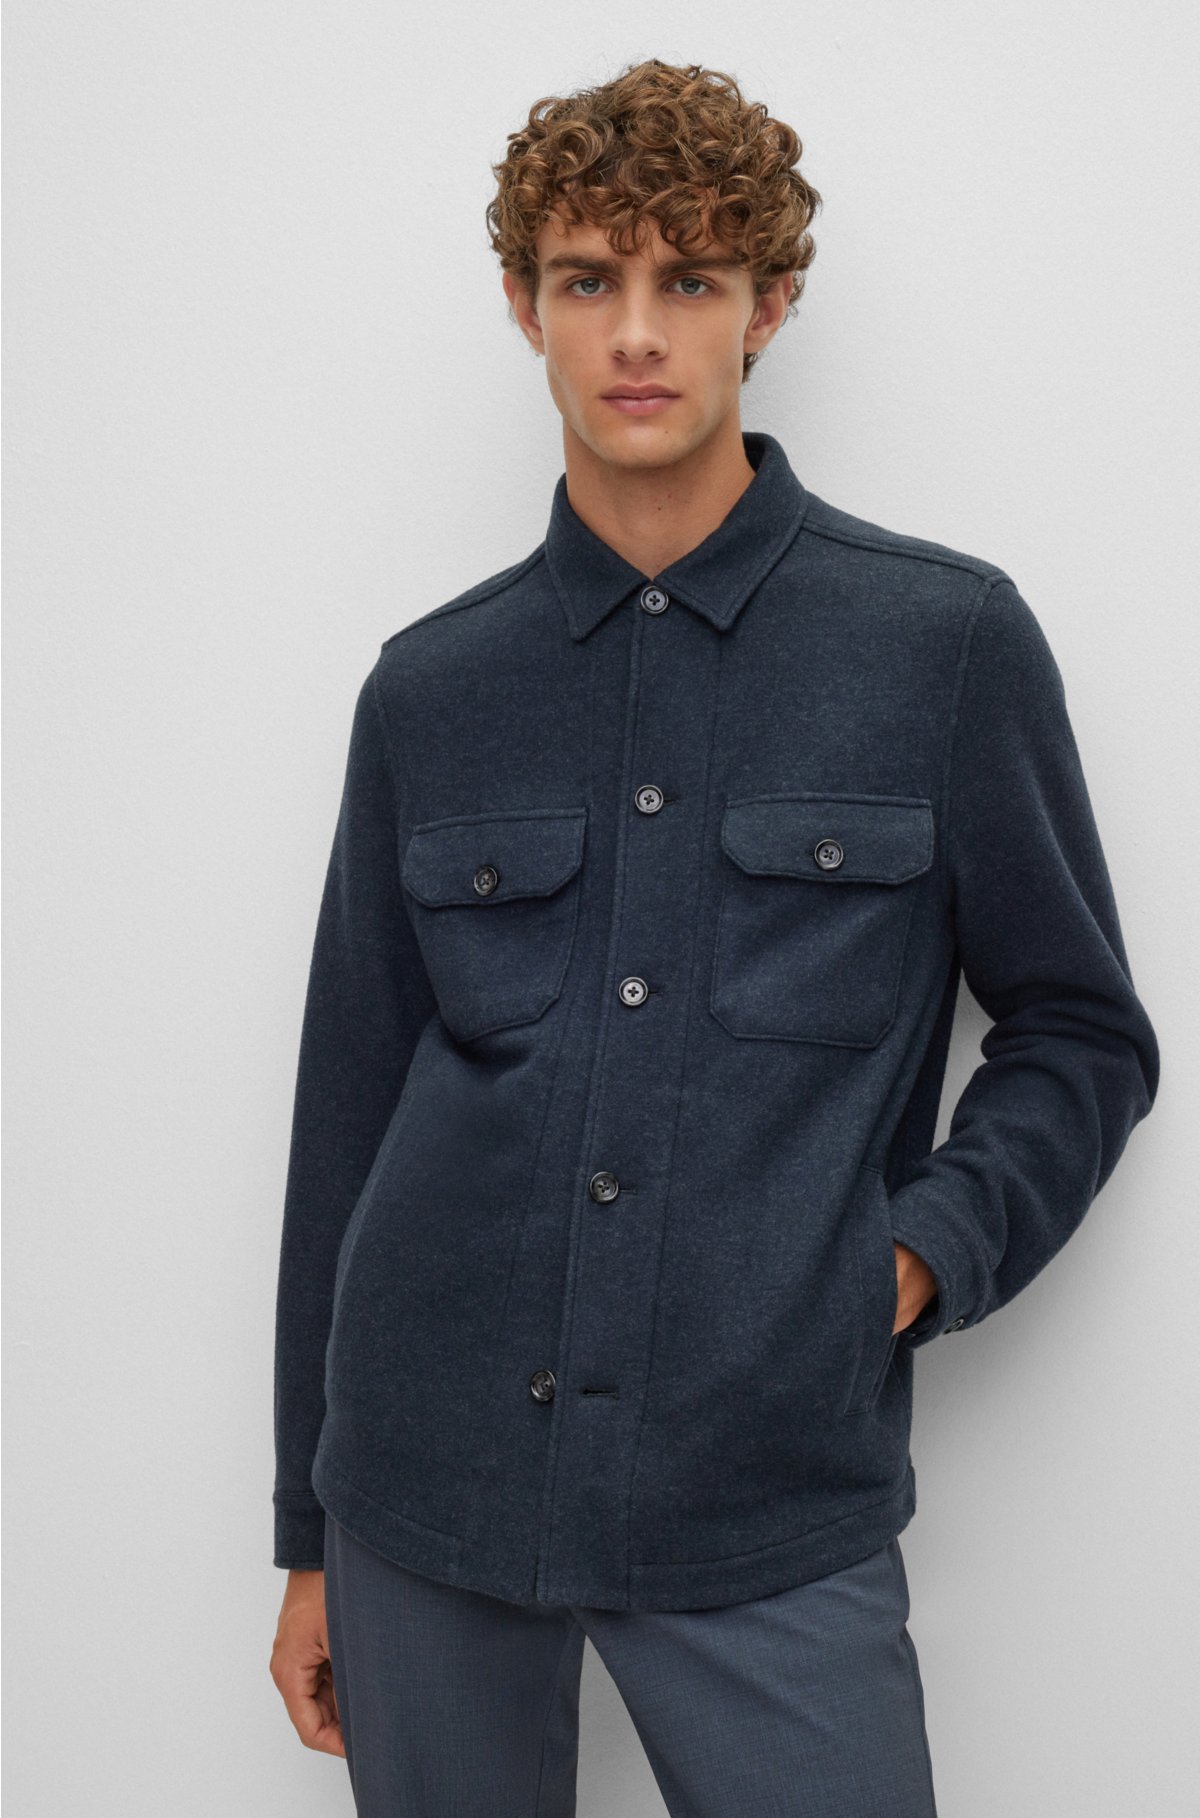 BOSS - Relaxed-fit jacket in melange wool-blend jersey